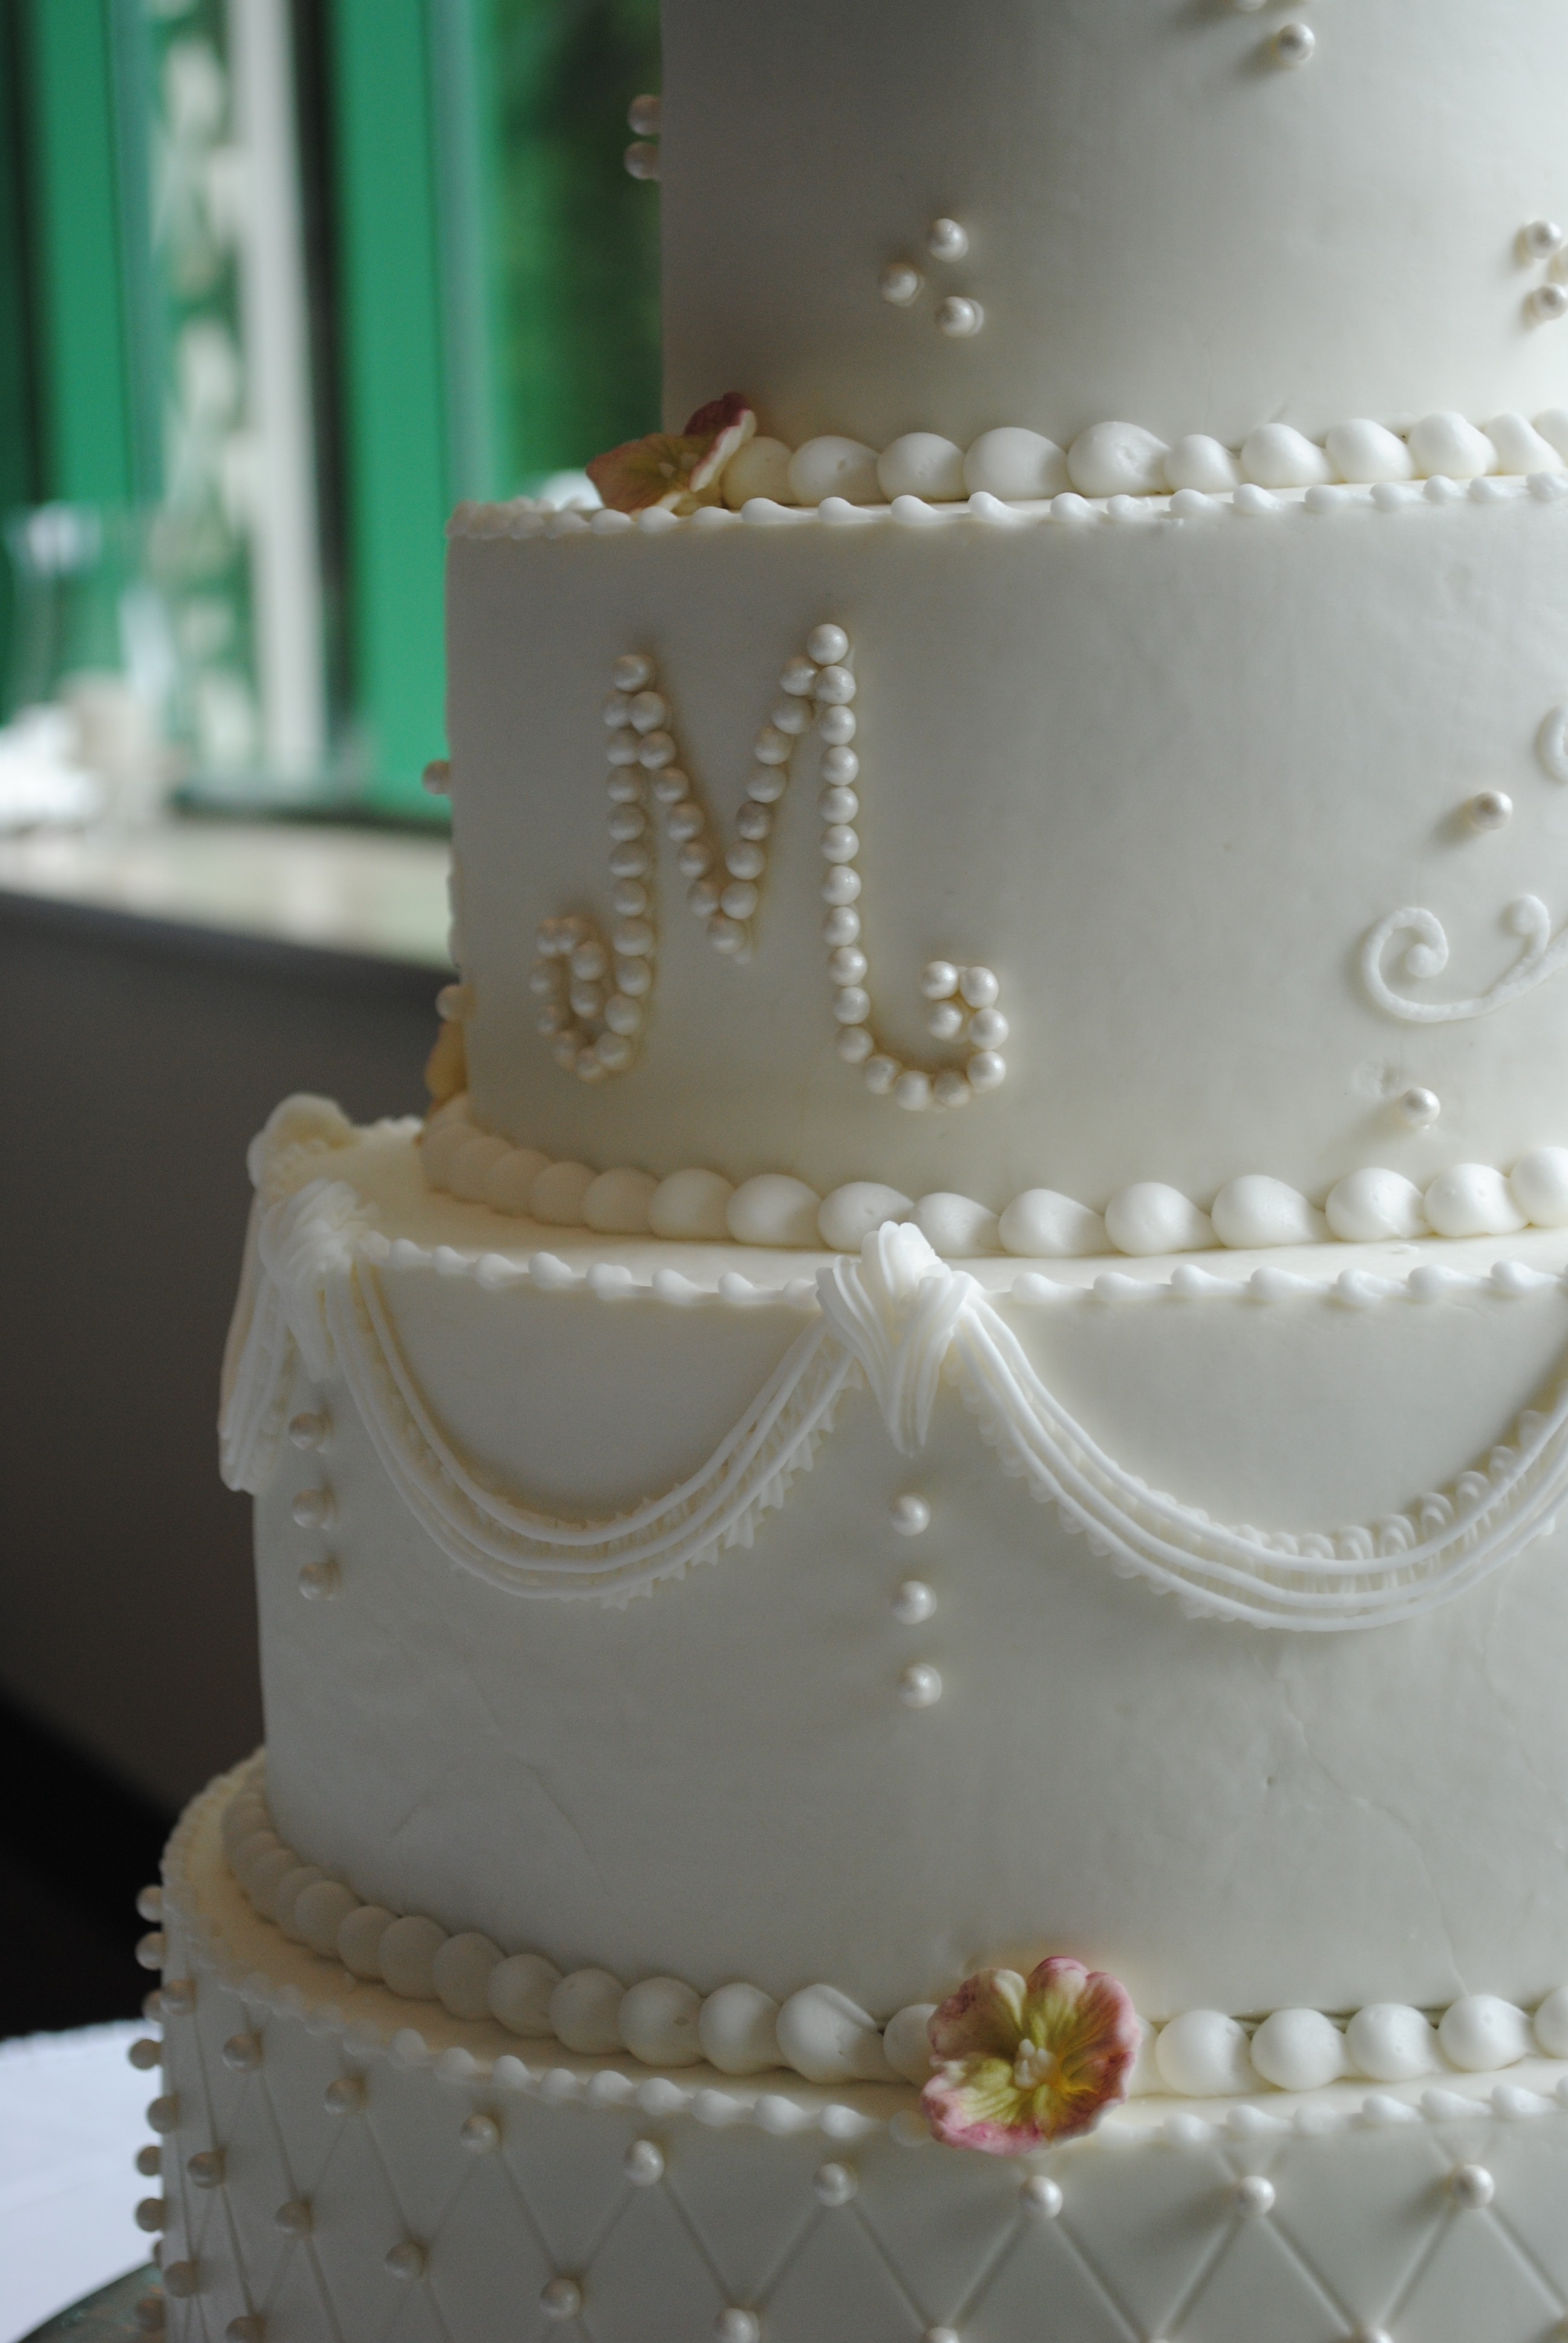  Buttercream  Wedding  Cake  Options Kathy and Company Wedding  